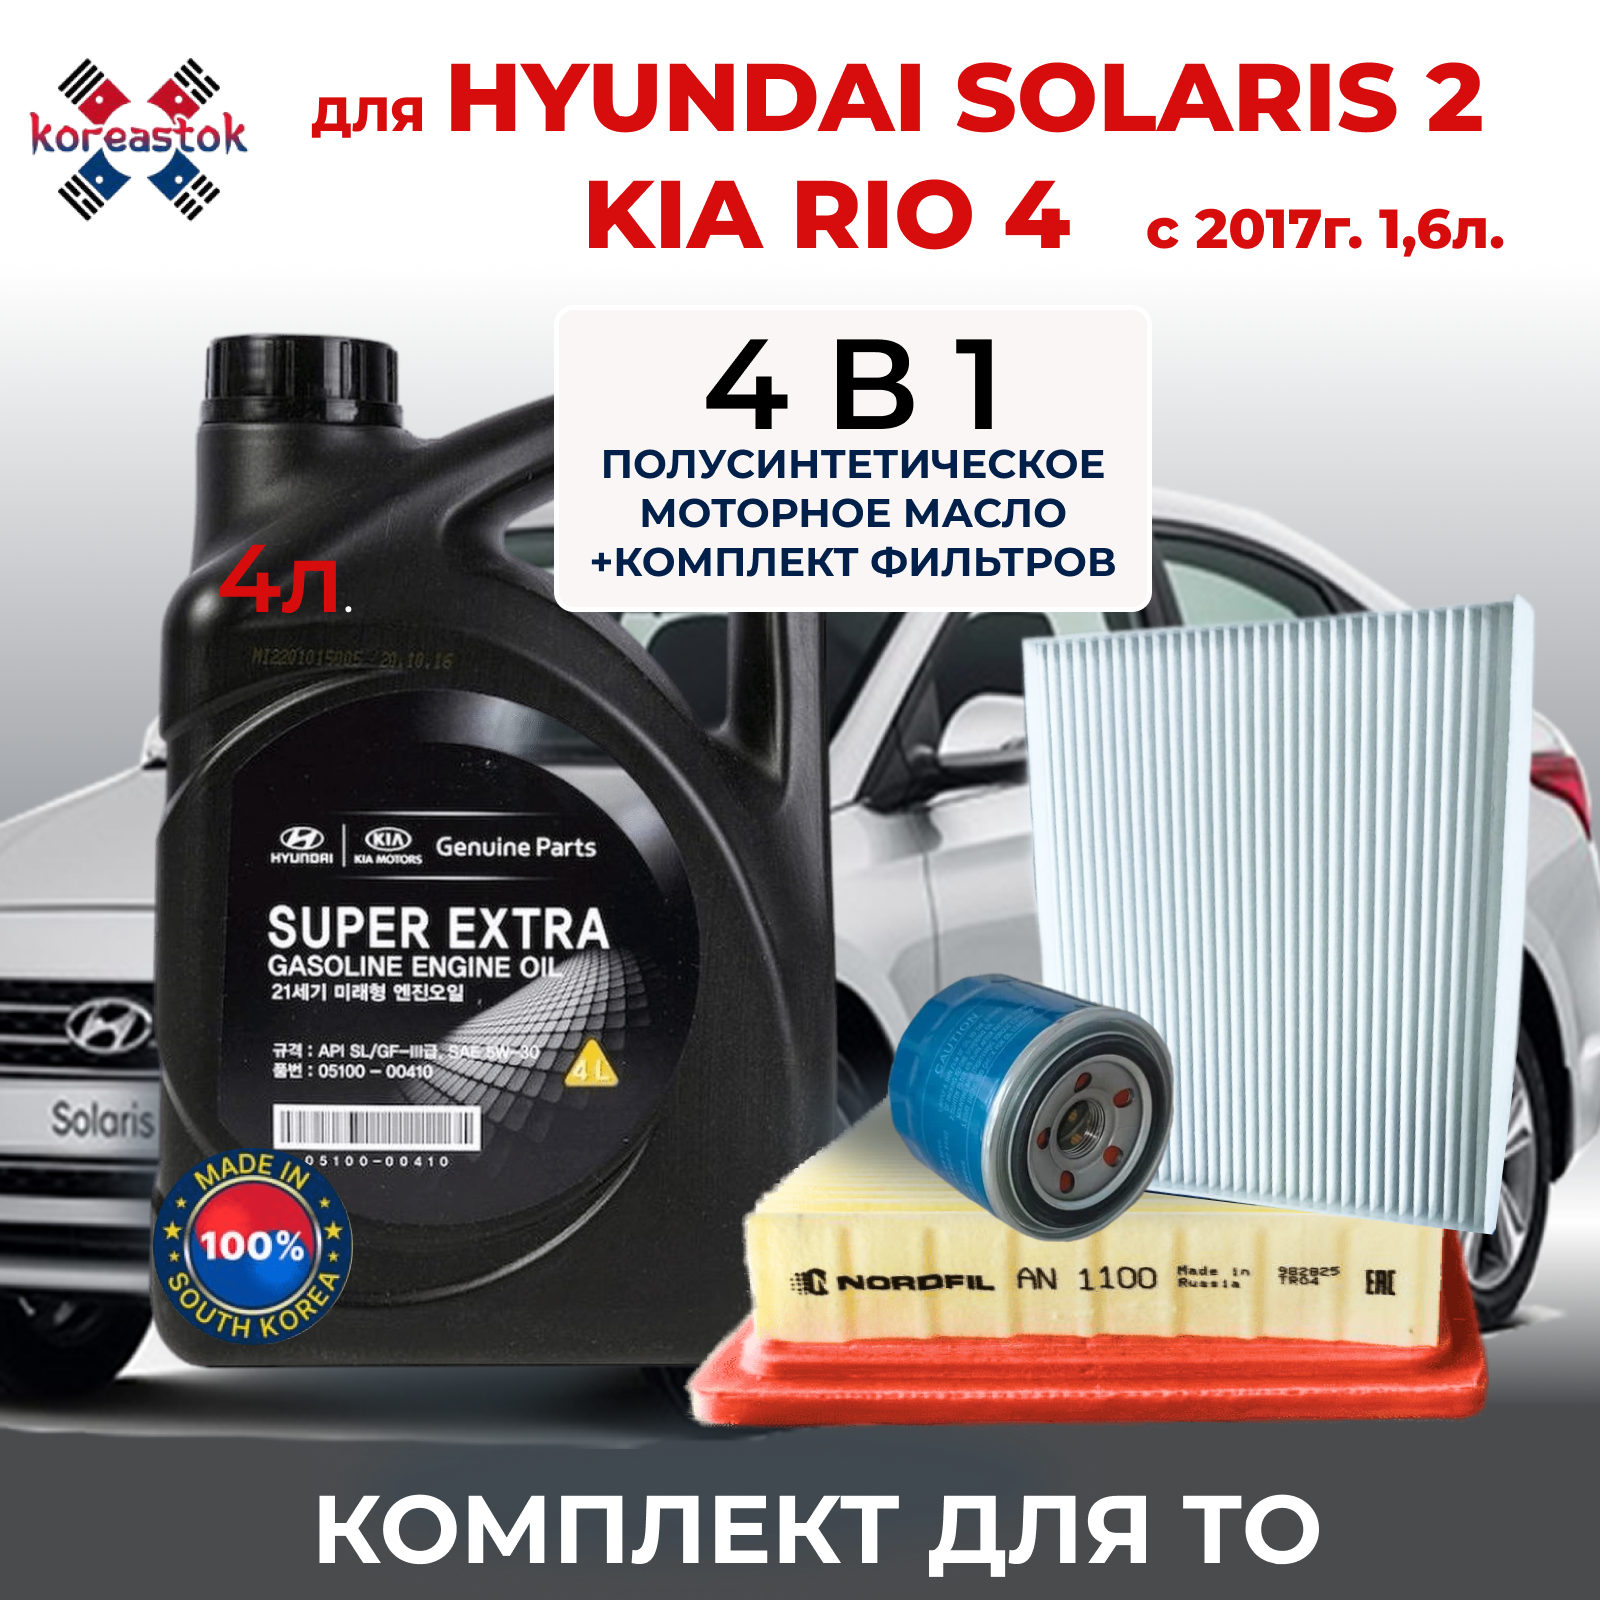 4 в 1. Набор фильтров для KIA Rio и Hyundai Solaris 1,6 с 2017г. + моторное масло Super extra 5w-30, полусинтетическое. 4л.